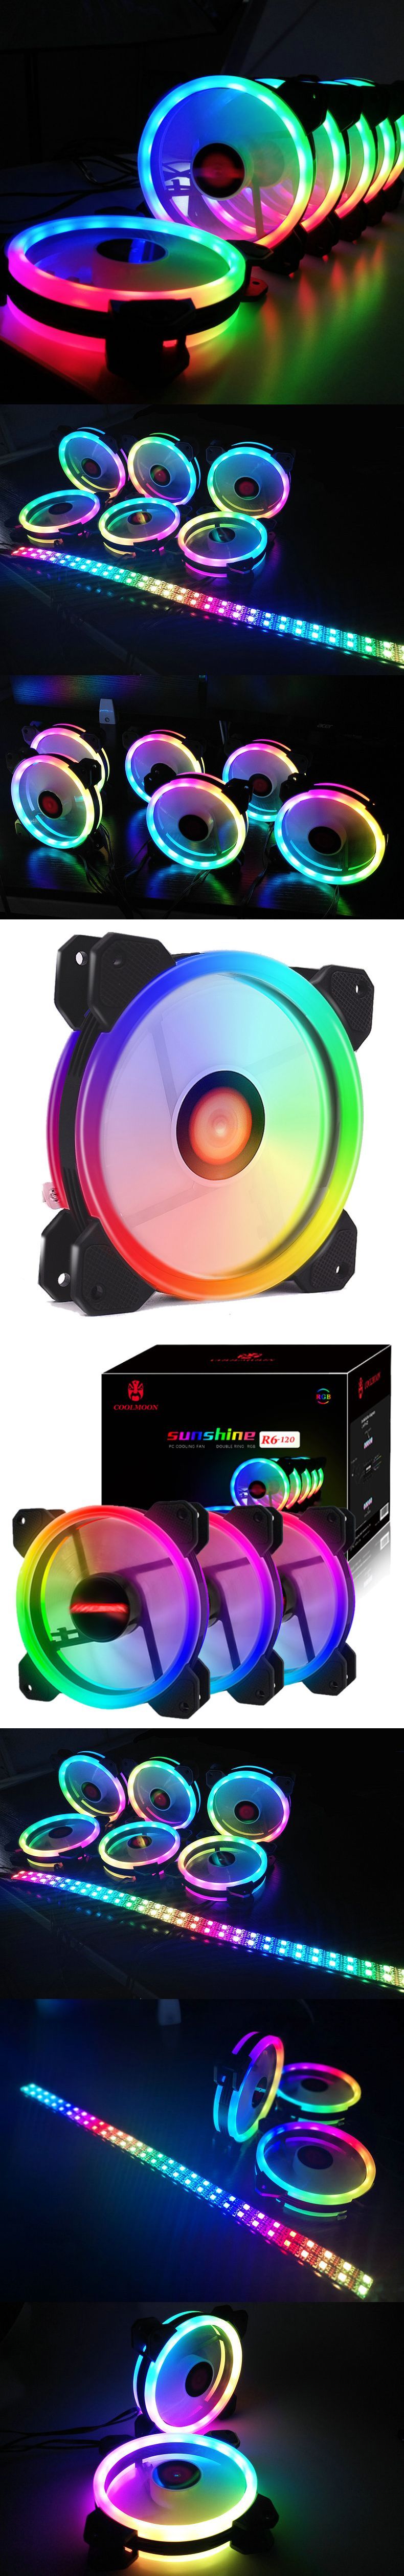 COOLMOON-Aurora-Desktop-Computer-Case-Fan-12cm-Double-Aperture-Automatic-Color-Changing-RGB-LED-Ligh-1657369